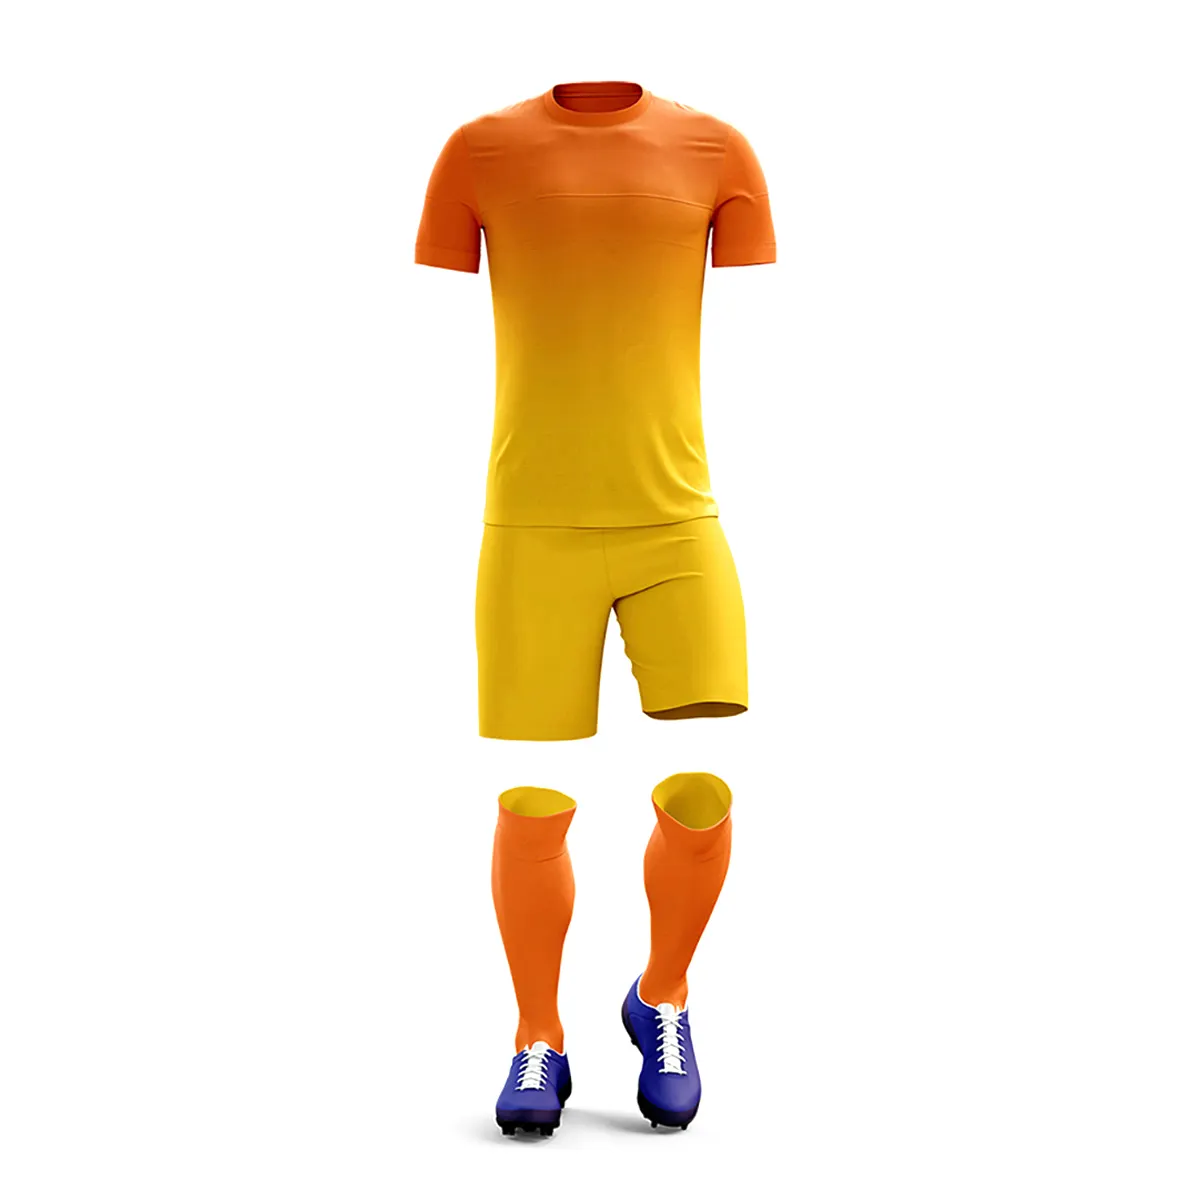 Neuankömmlinge tragen und Erwachsene billig Polyester hochwertige Sublimation einfache Fußball uniform Set